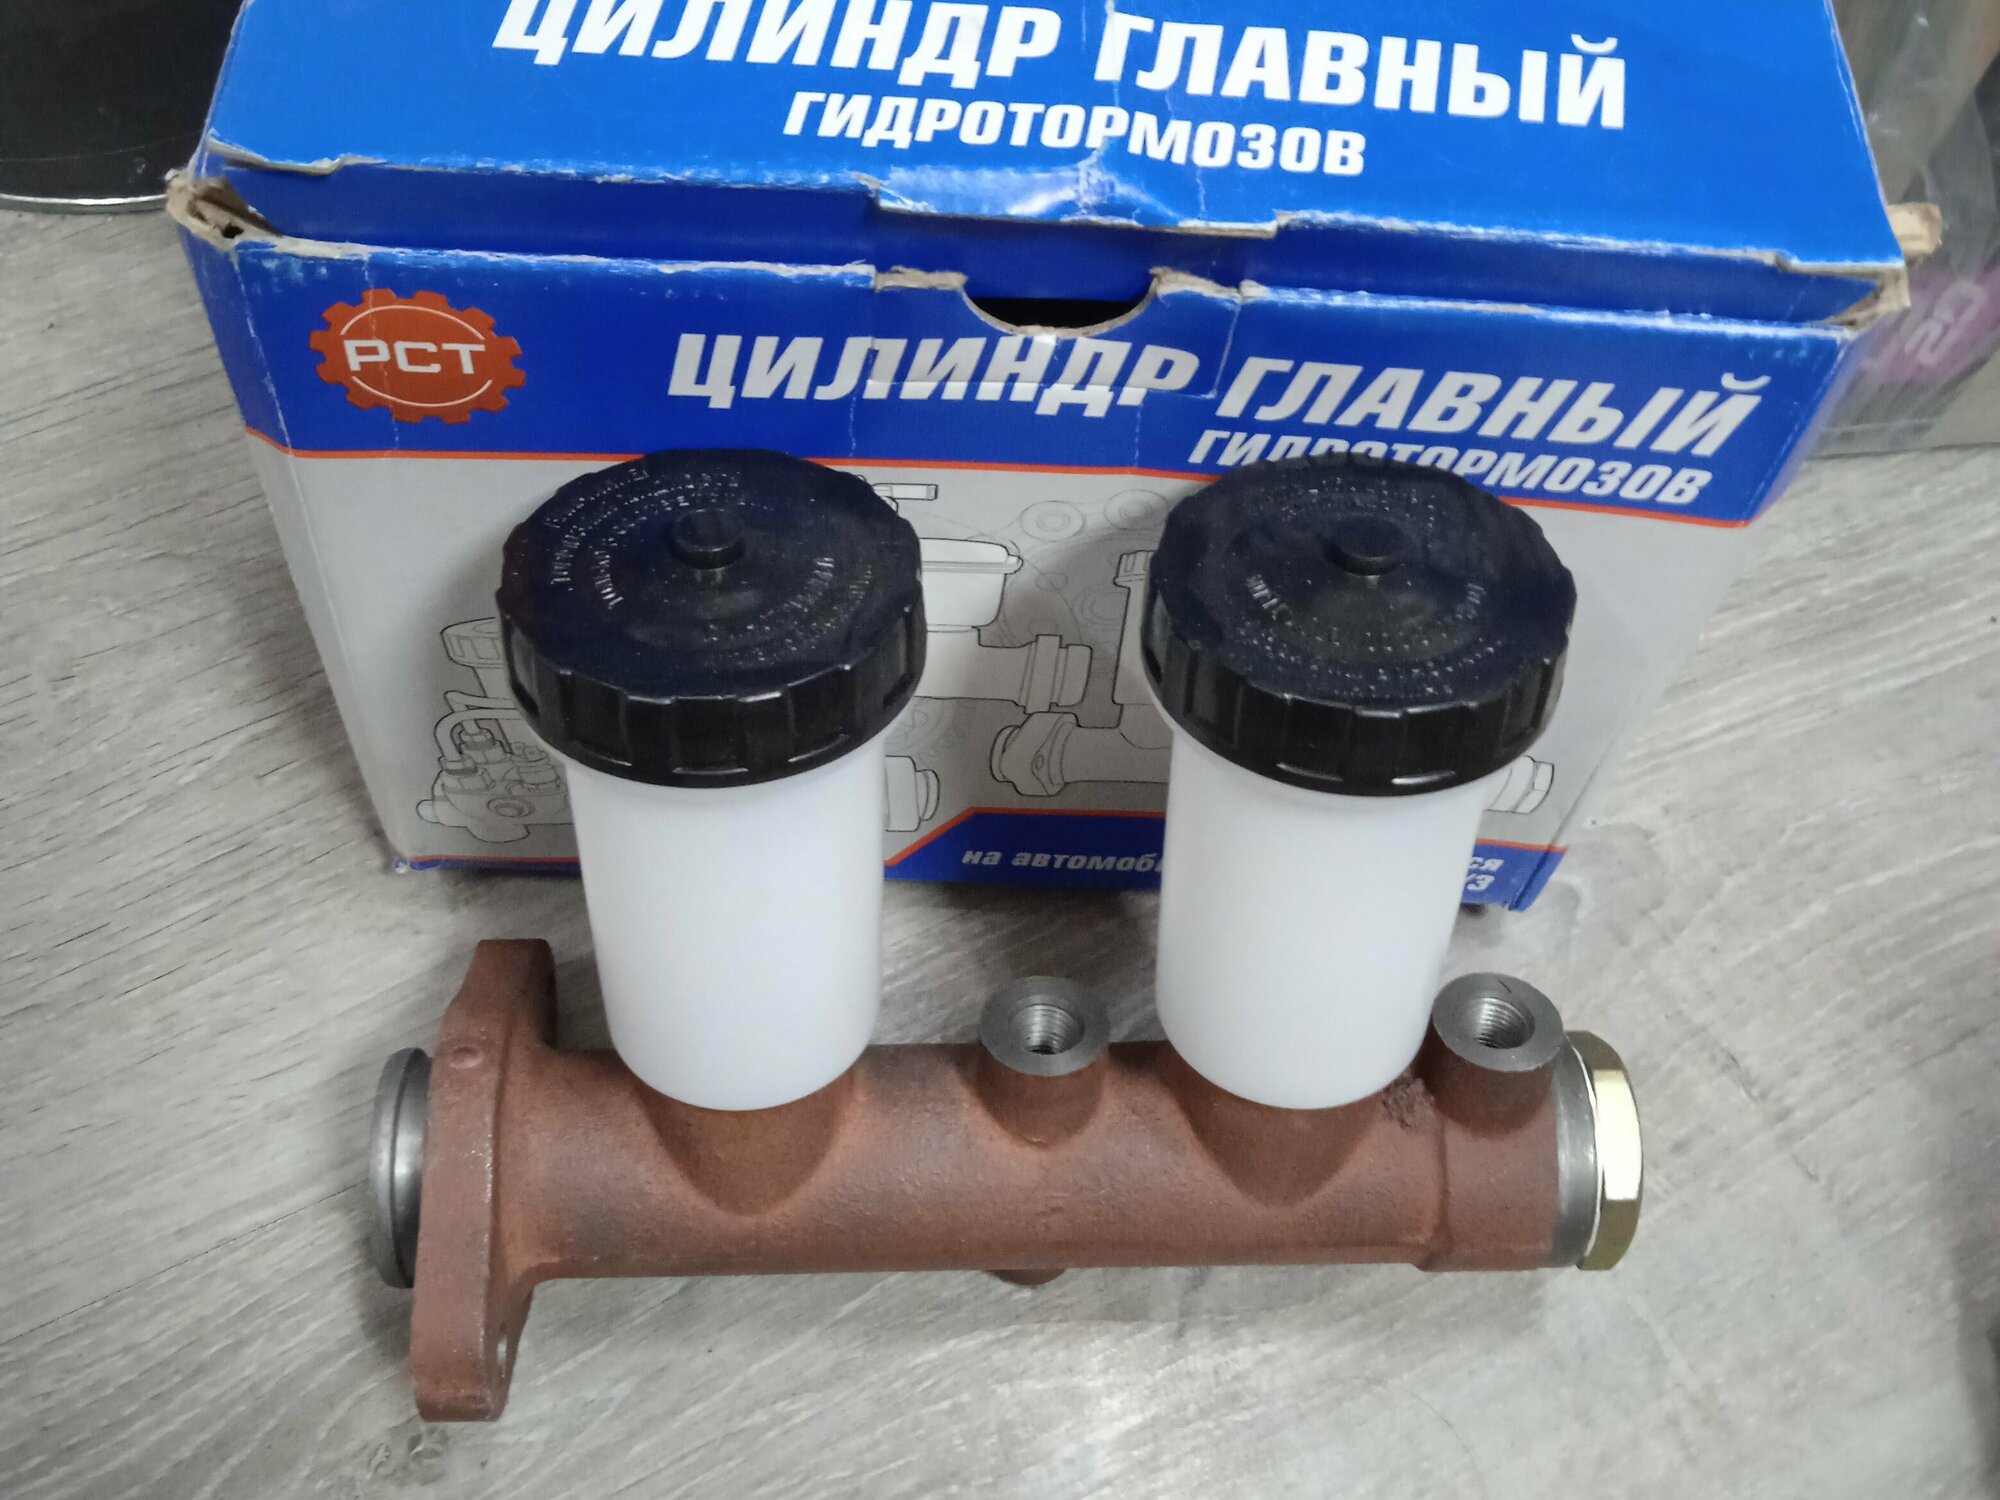 Цилиндр тормозной главный для УАЗ-3151 (ст образца) 2 бочка без сигнализатора РСТ